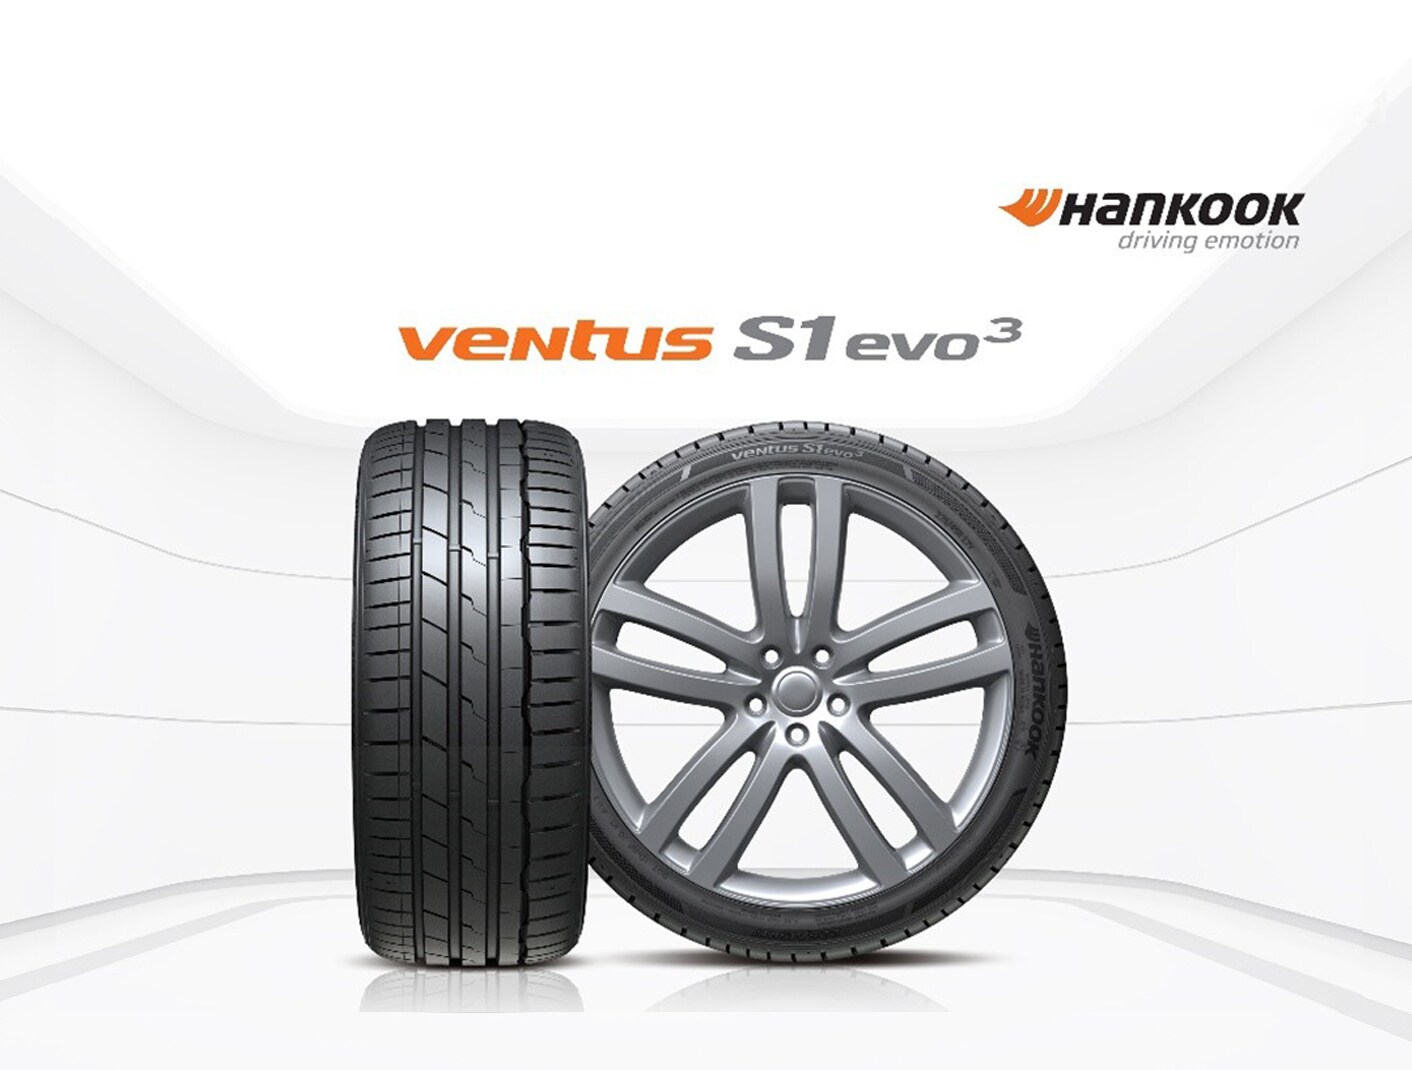 韩泰Ventus S1 evo3在Auto Bild夏季轮胎制动距离测试中获得优胜